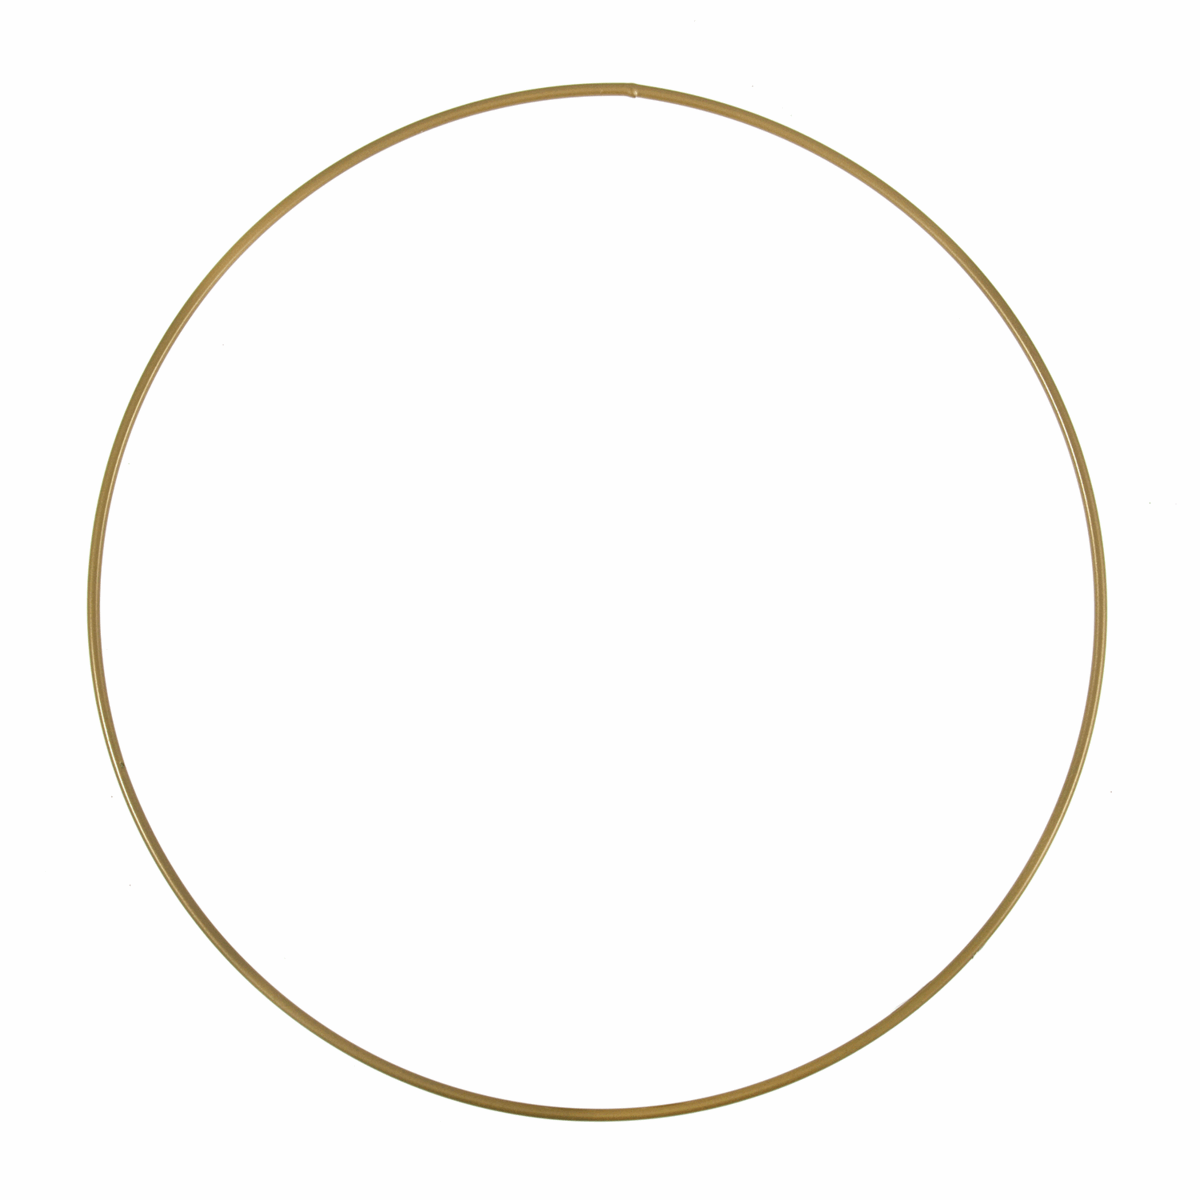 Trimits Gold Metal Wire Craft Hoop - 25cm